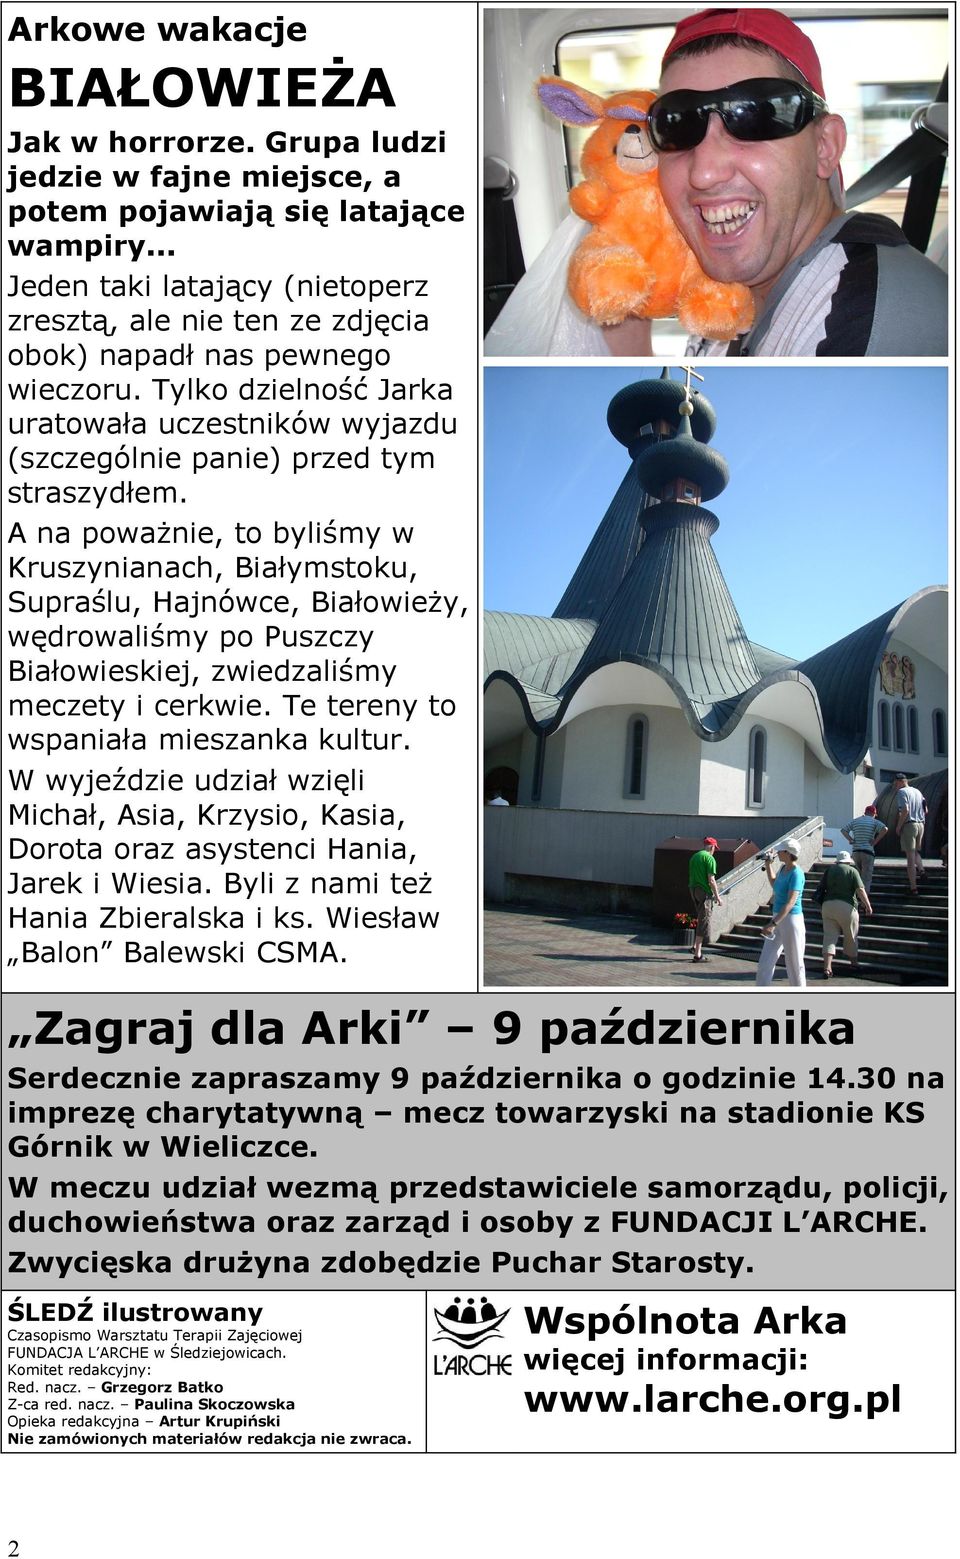 A na poważnie, to byliśmy w Kruszynianach, Białymstoku, Supraślu, Hajnówce, Białowieży, wędrowaliśmy po Puszczy Białowieskiej, zwiedzaliśmy meczety i cerkwie. Te tereny to wspaniała mieszanka kultur.